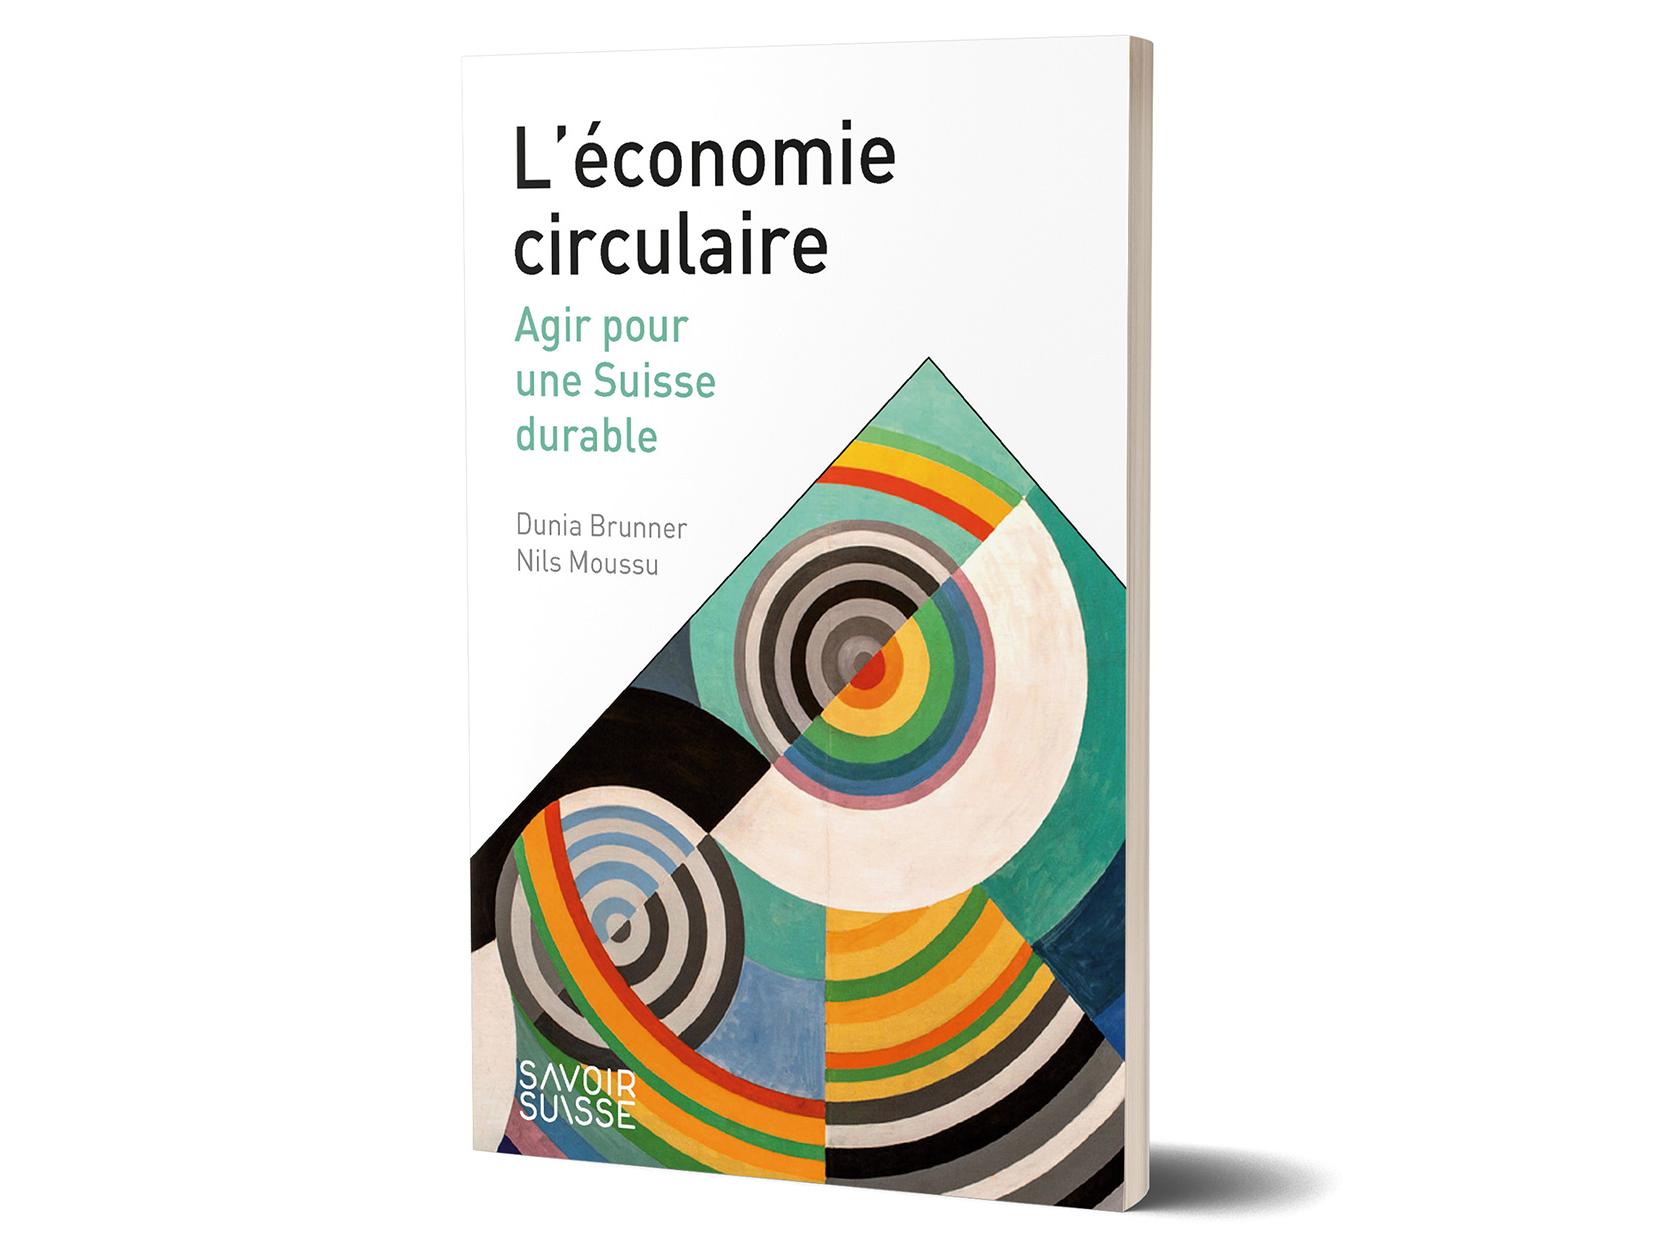 Nouvelle publication sur l’économie circulaire dans la collection Savoir suisse 
